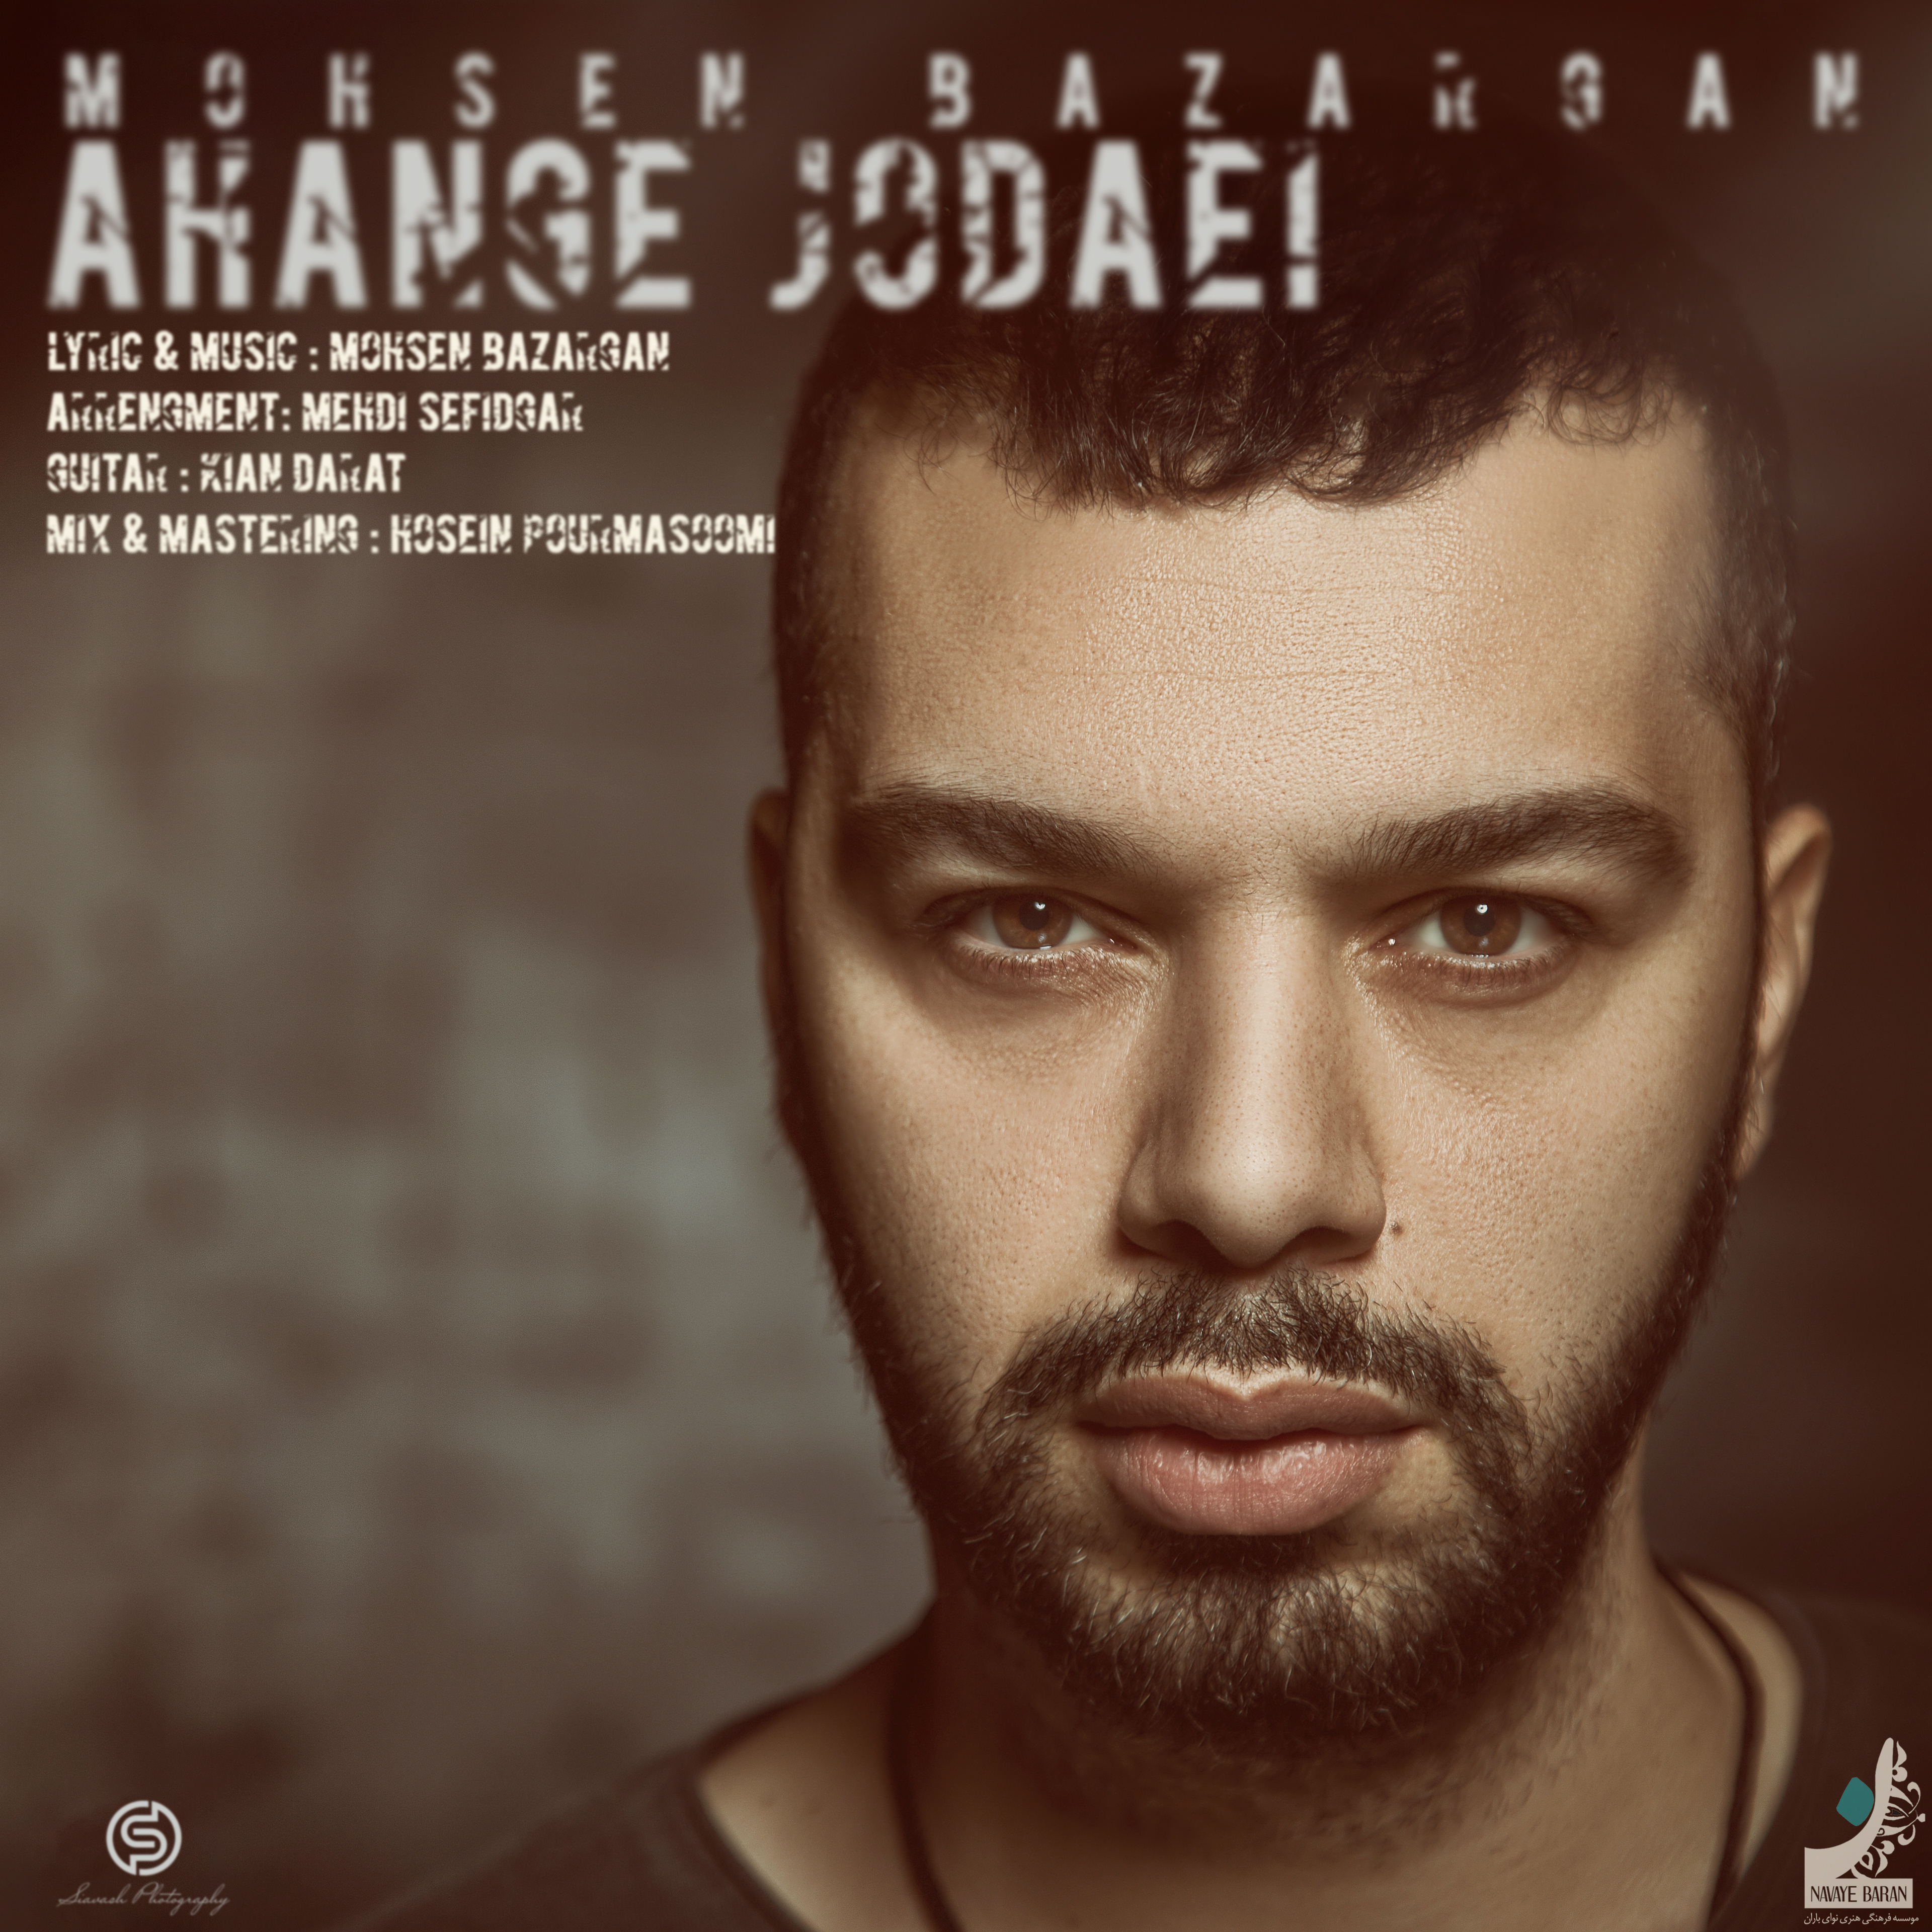  دانلود آهنگ جدید محسن بازرگان - آهنگ جدایی | Download New Music By Mohsen Bazargan - Ahange Jodaei